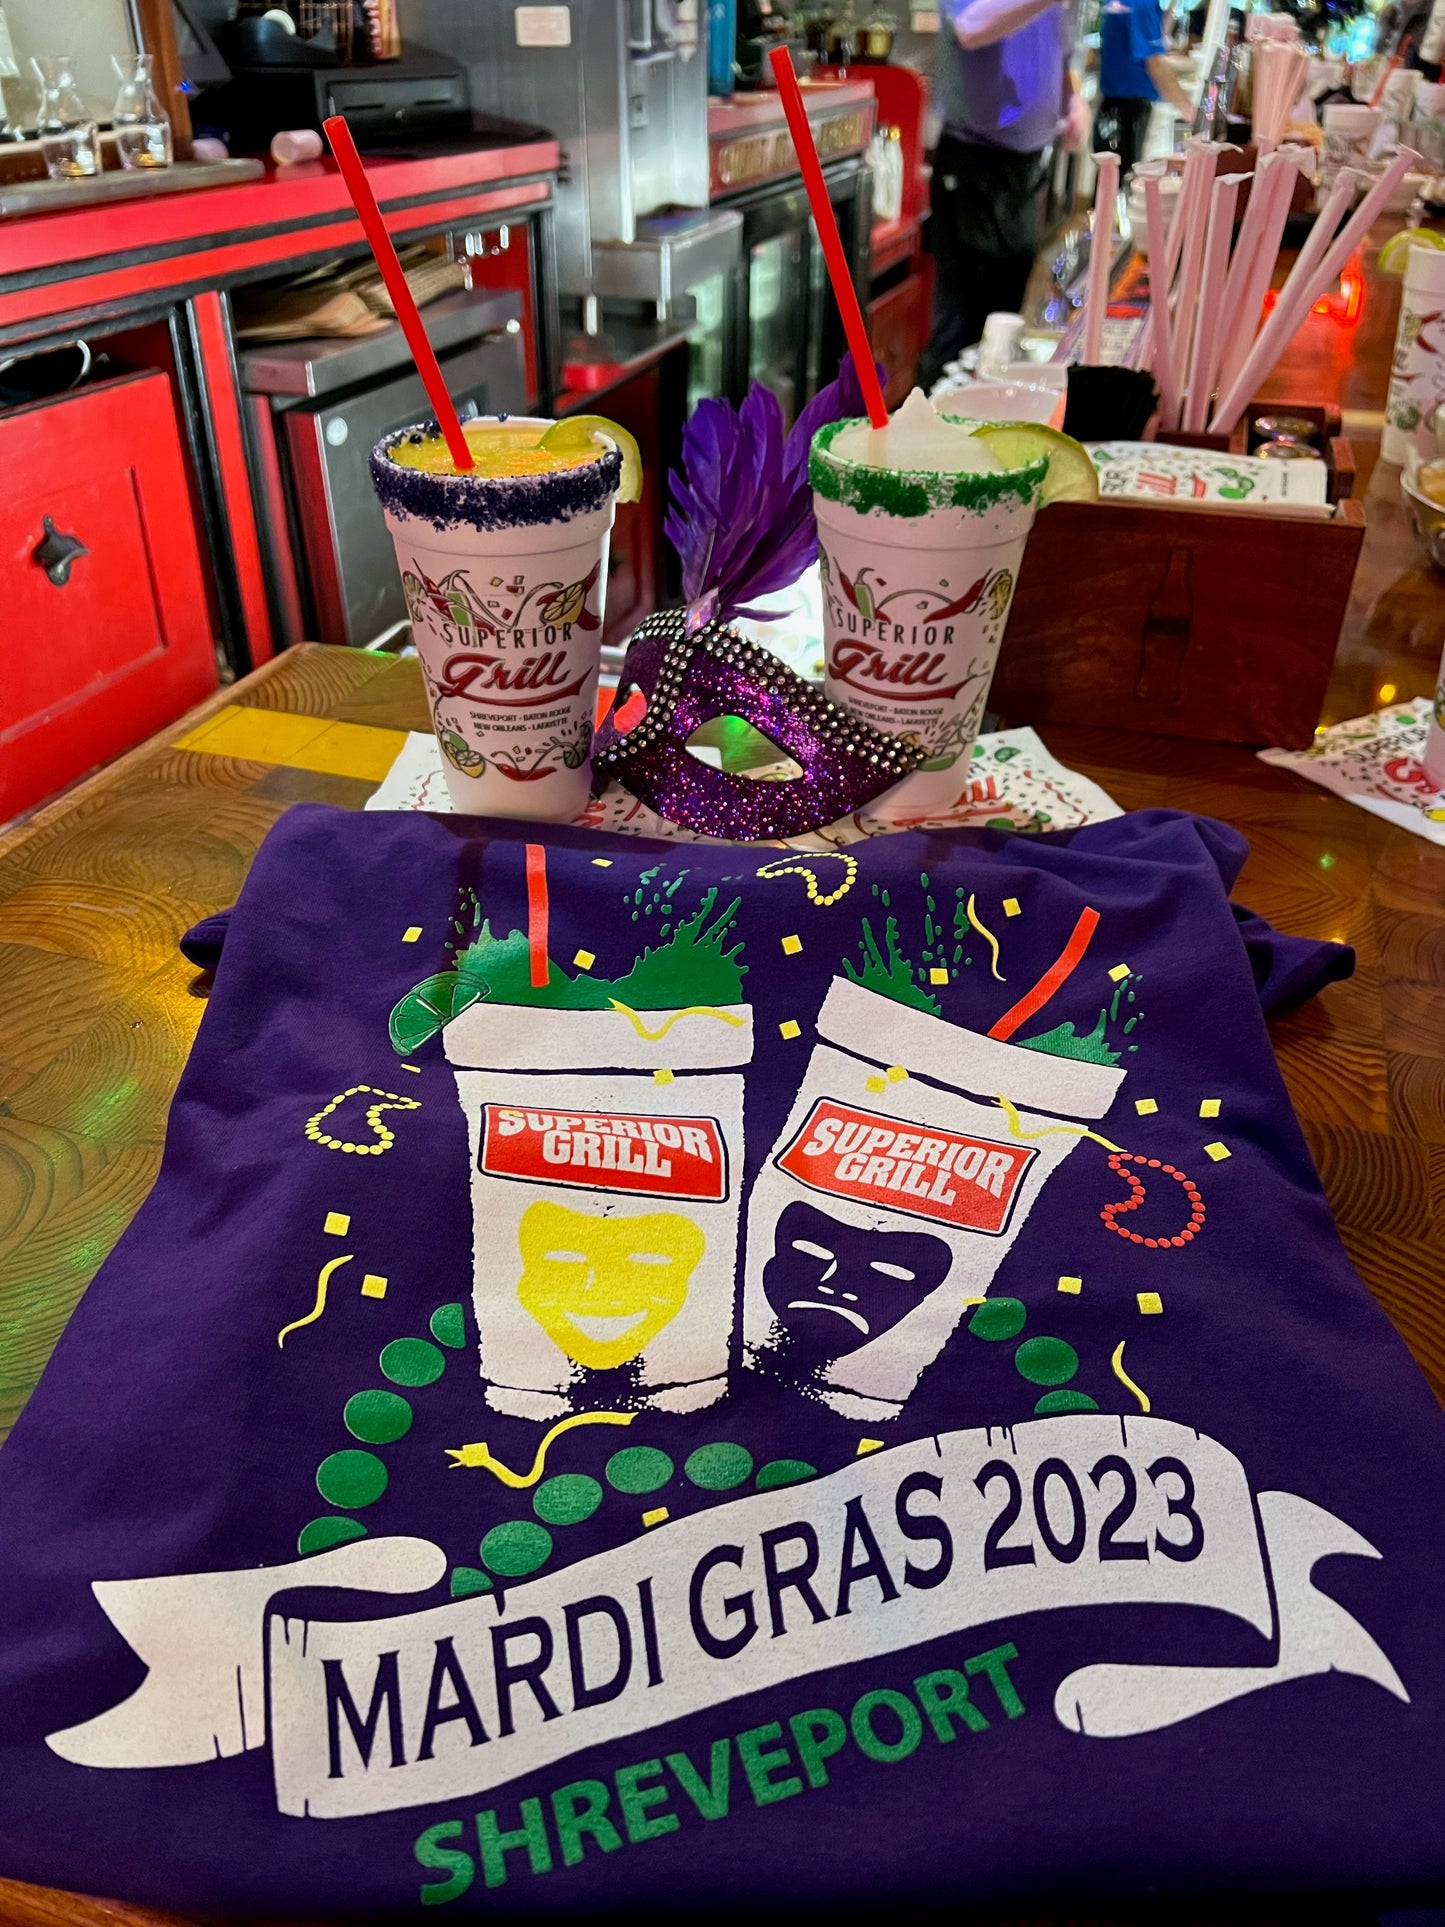 2023 Mardi Gras T-Shirt (Shreveport)